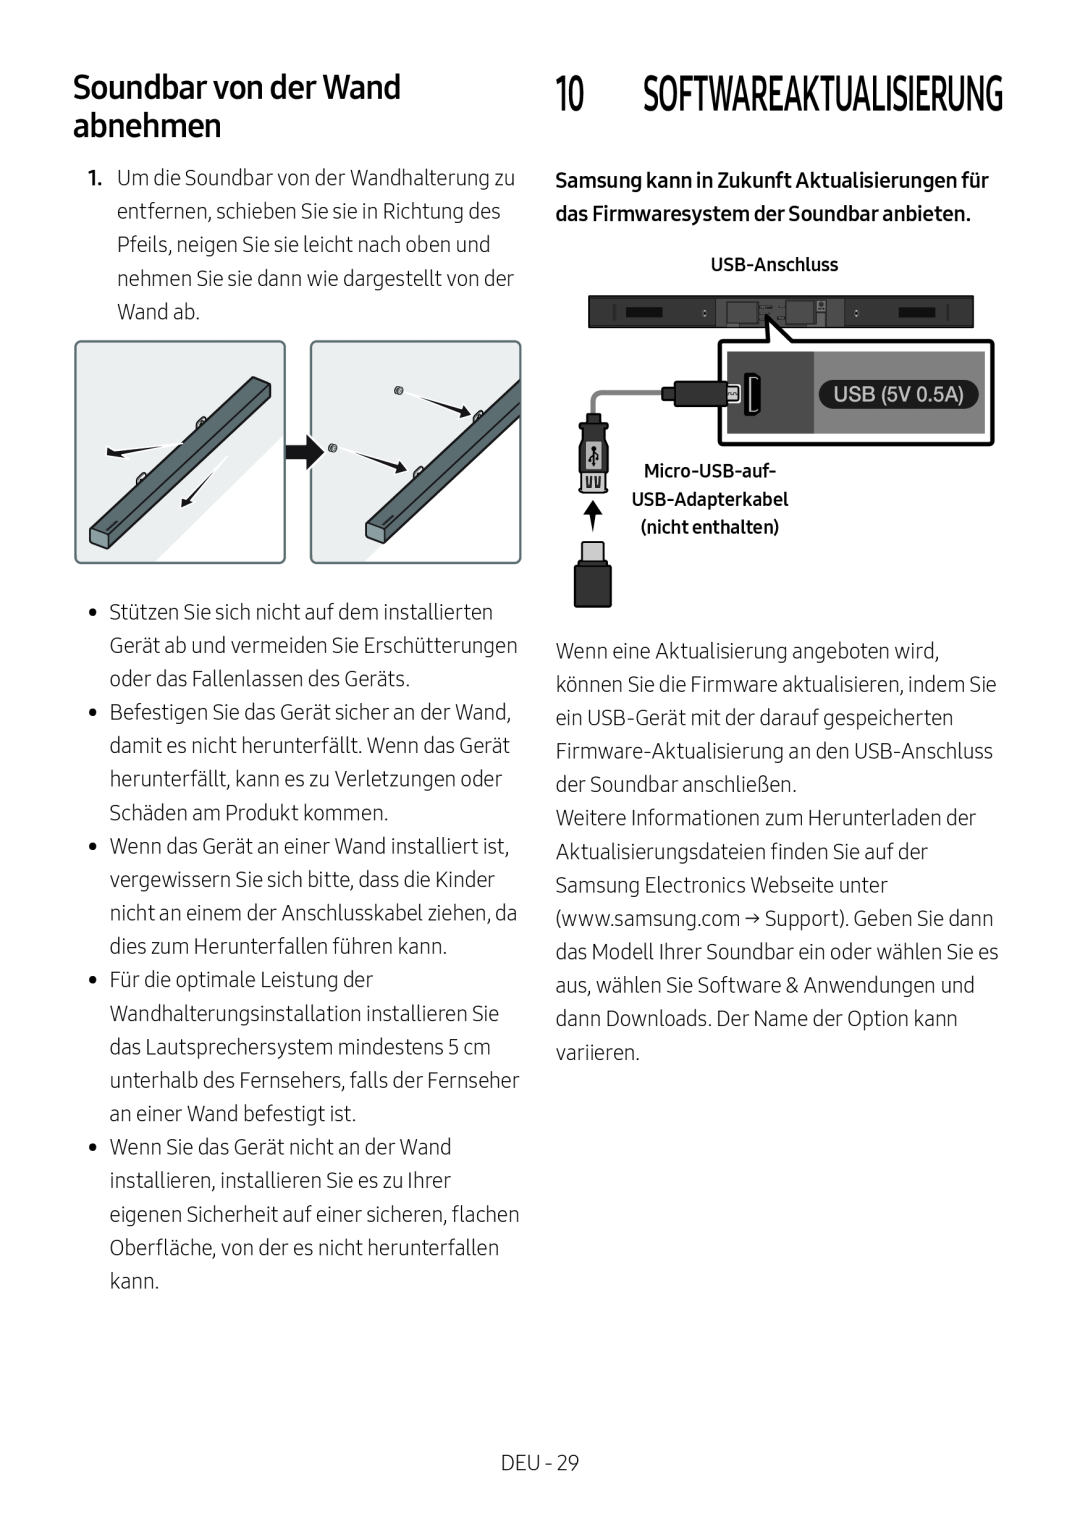 Samsung HW-M450/ZF, HW-M450/EN, HW-M450/ZG, HW-M460/XE Soundbar von der Wand abnehmen, Softwareaktualisierung, USB 5V 0.5A 